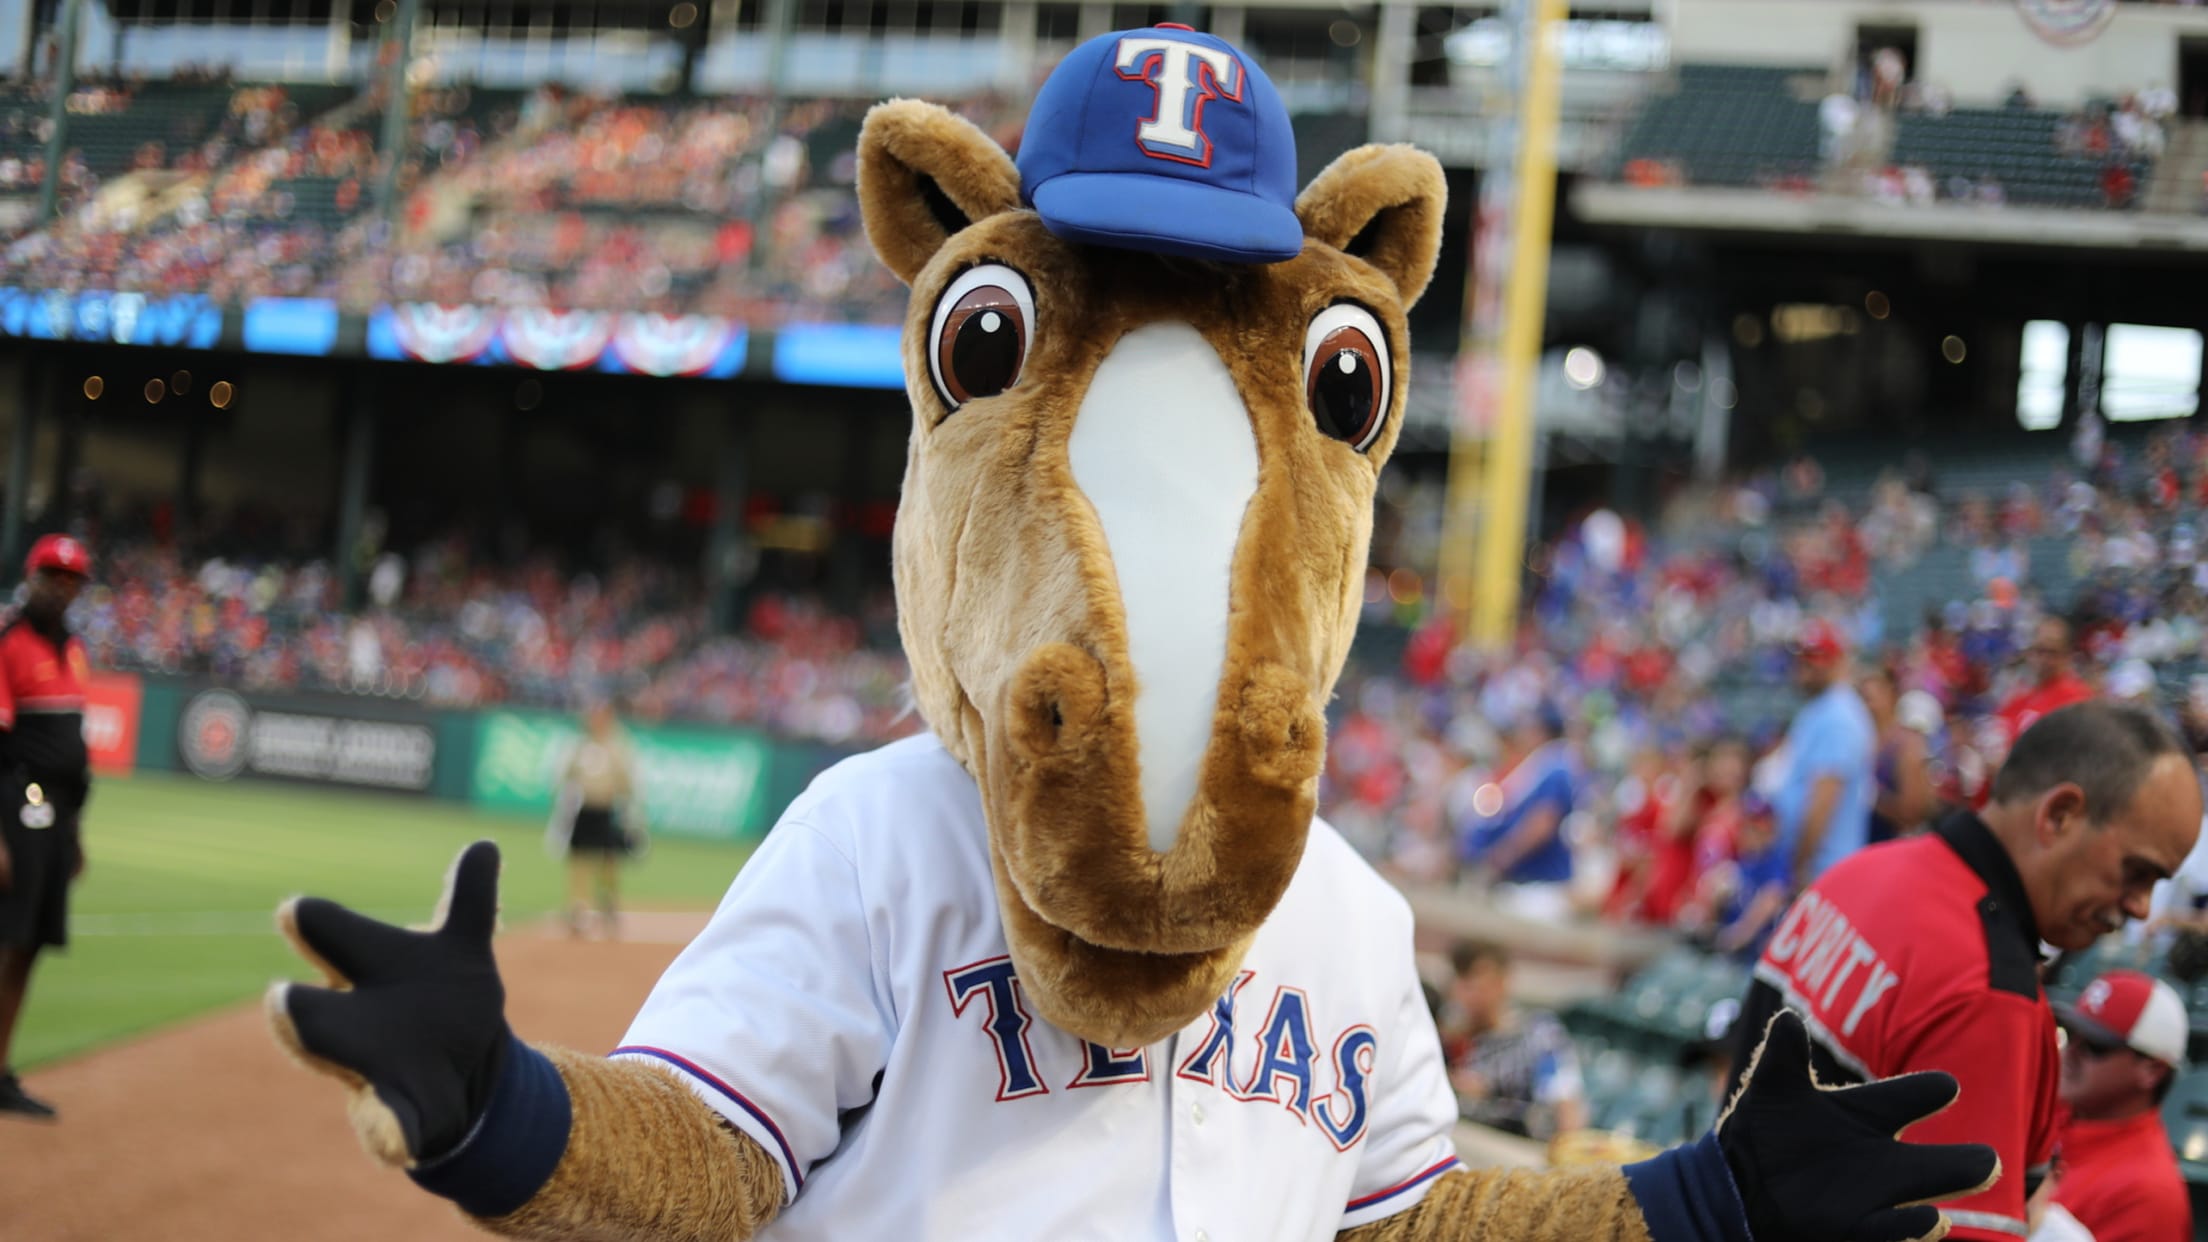 Texas Rangers Fans Show Their Team Spirit with Blue Hair - wide 2